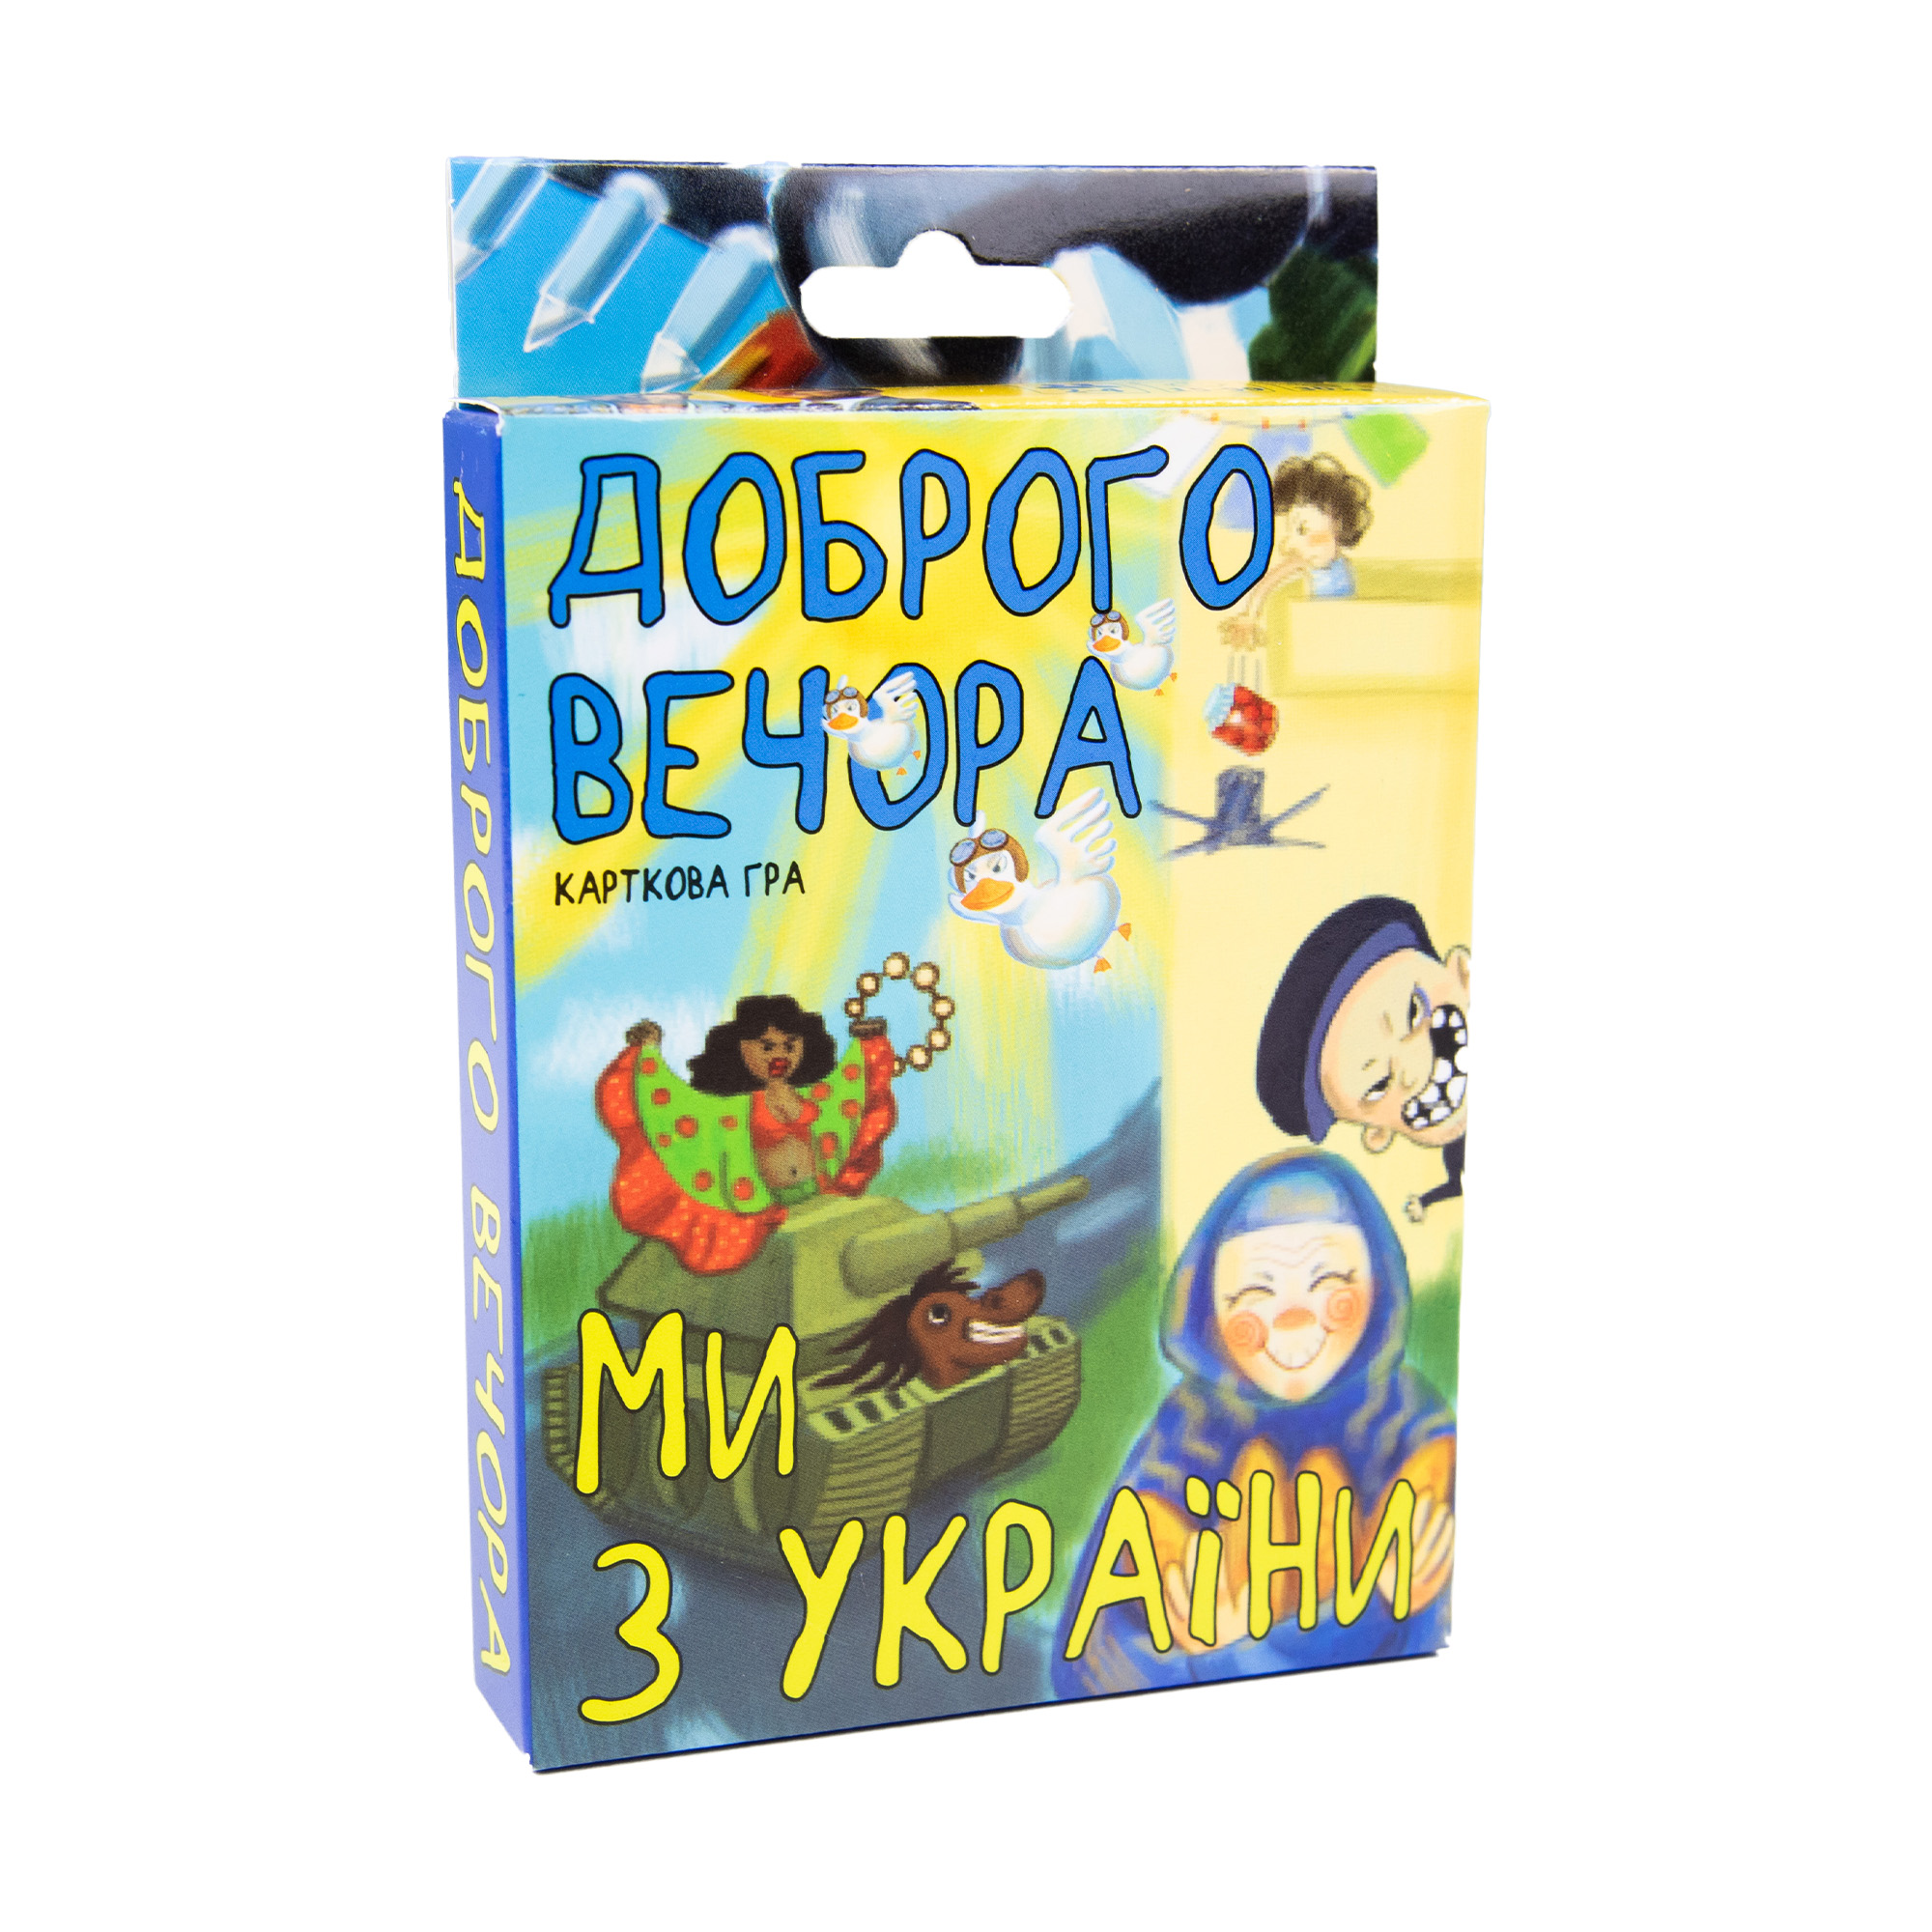 Настольная игра Strateg развлекательная карточная игра на украинском языке Добрый вечер мы из Украины (30371)